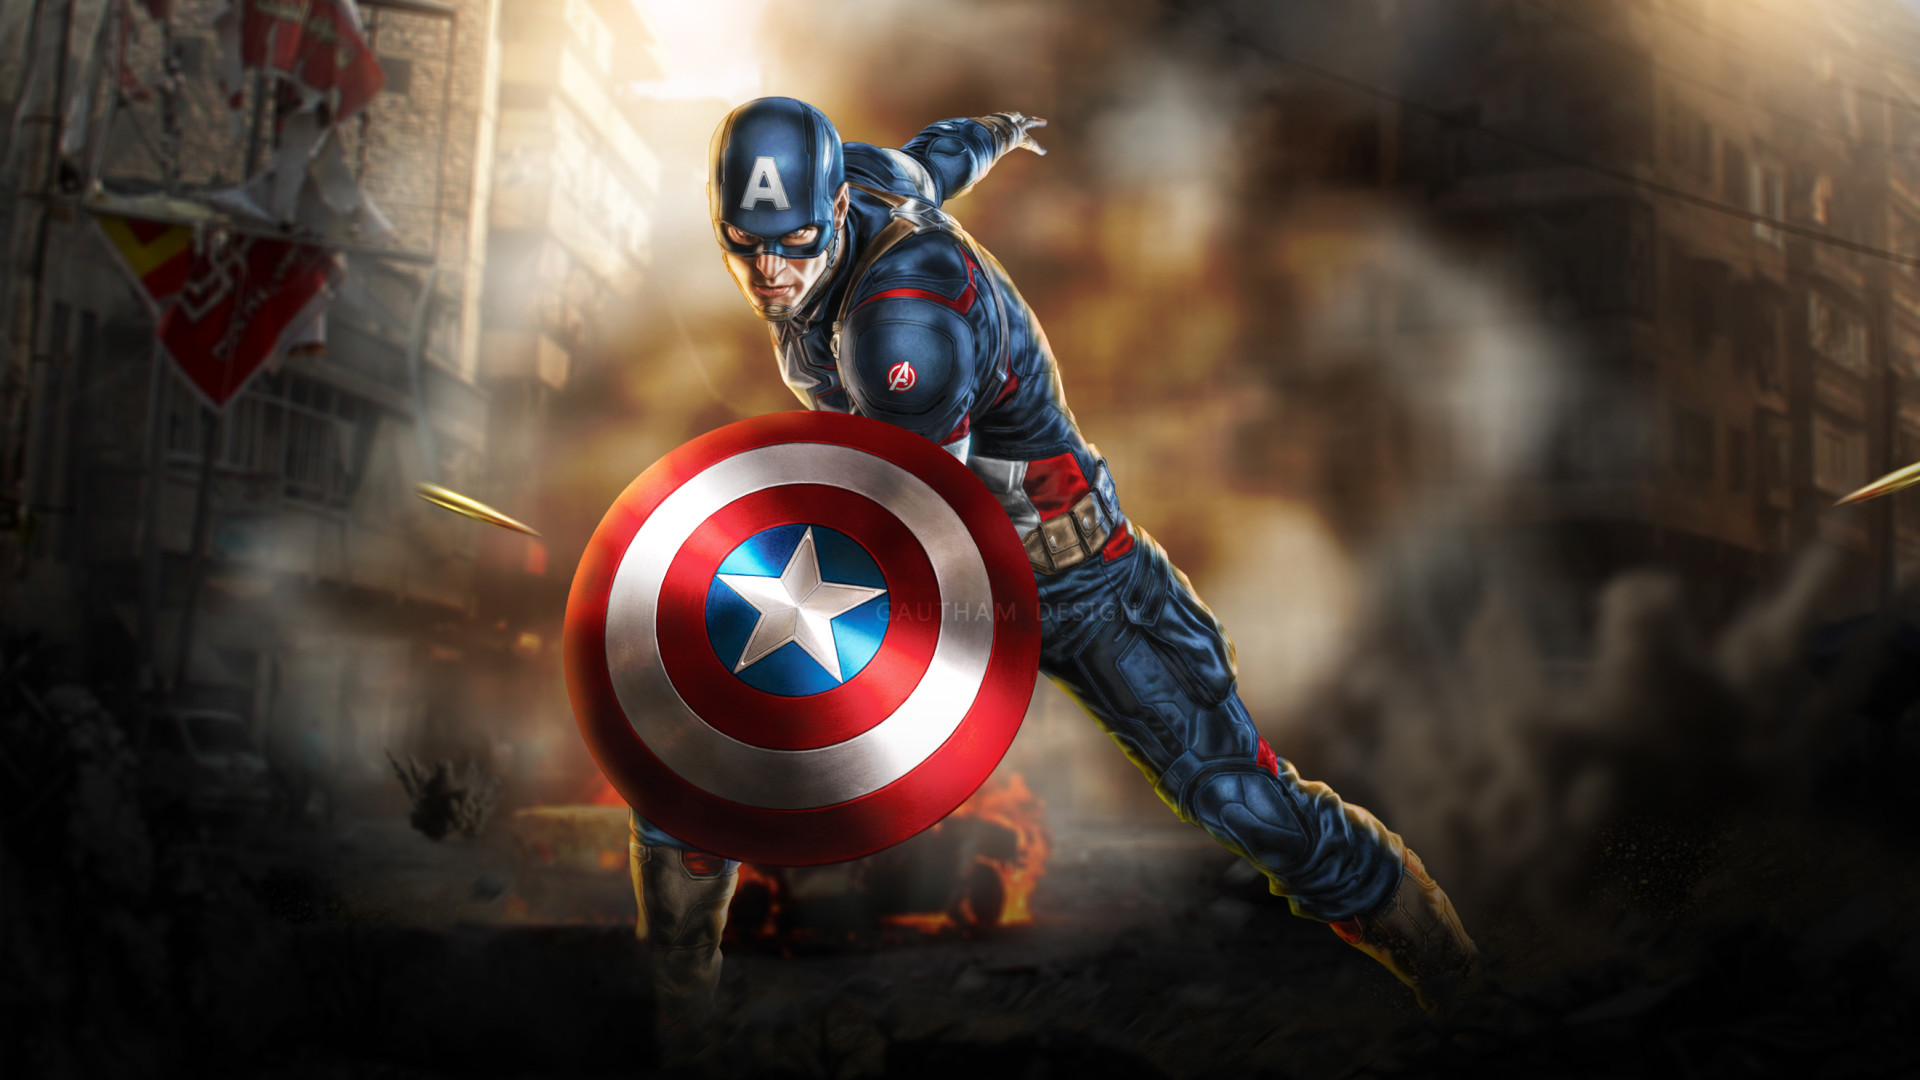 캡틴 아메리카 풀 hd 벽지,캡틴 아메리카,슈퍼 히어로,소설 속의 인물,영웅,액션 피규어